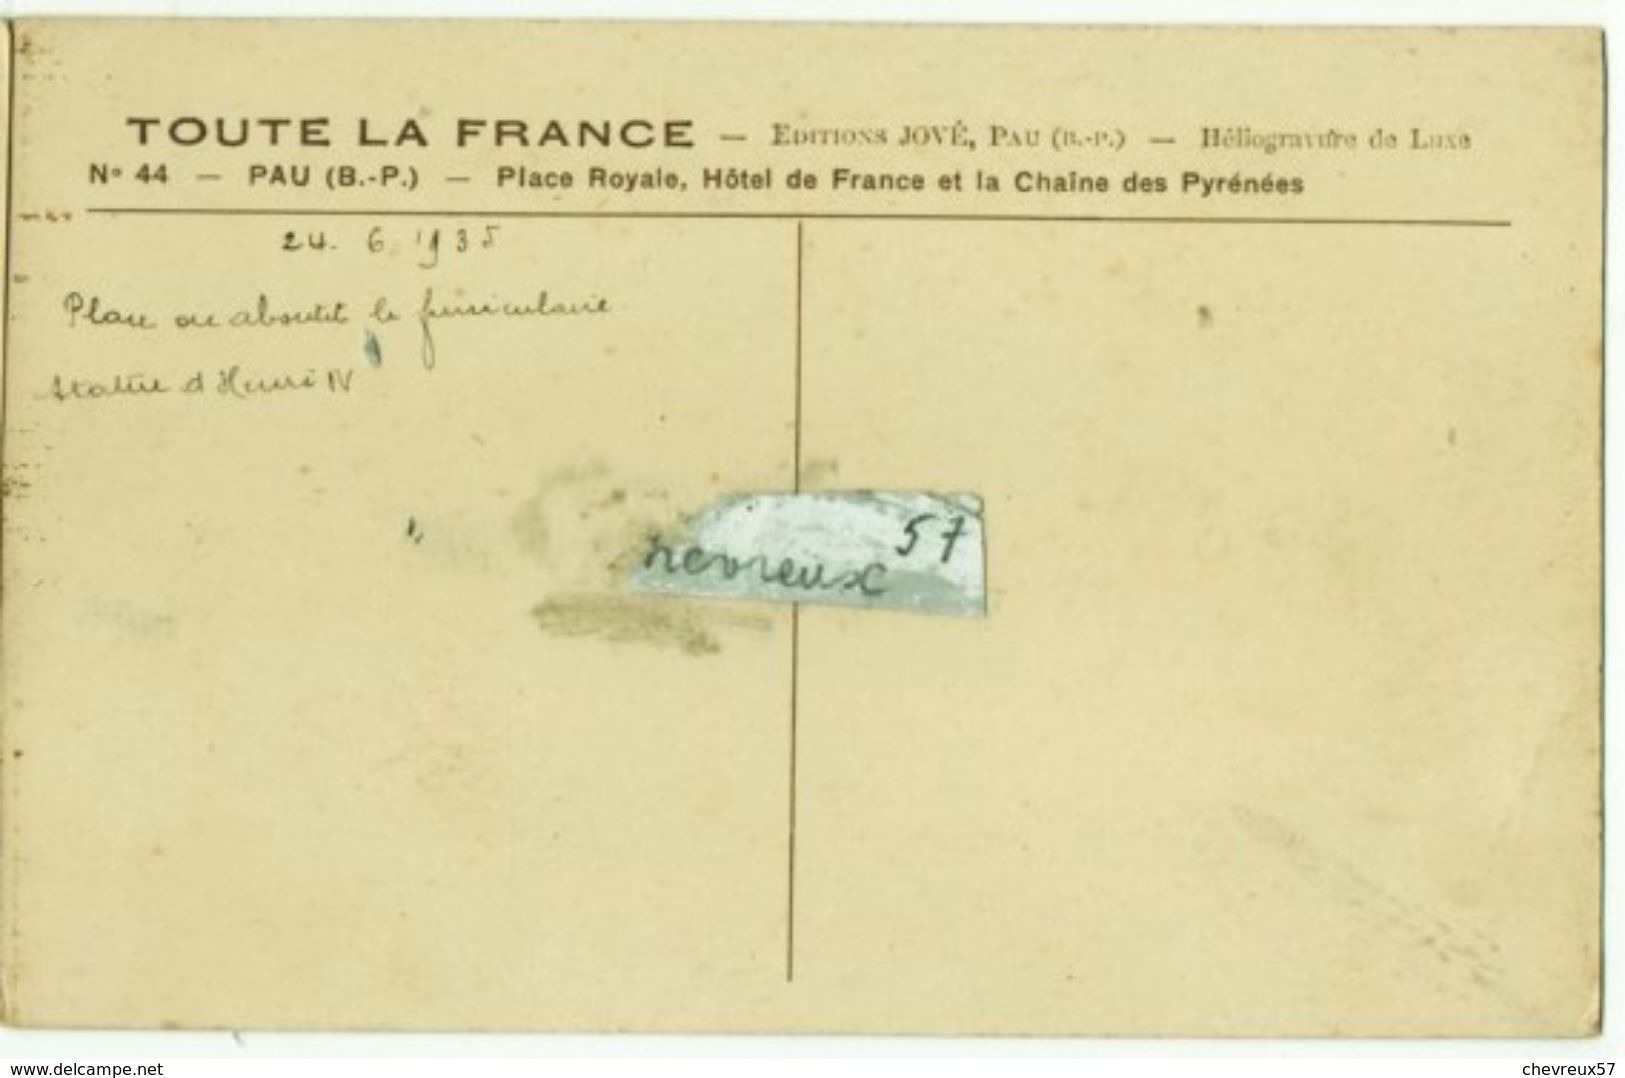 20 cartes anciennes de France- LOT 30 - Villes et Villages de France